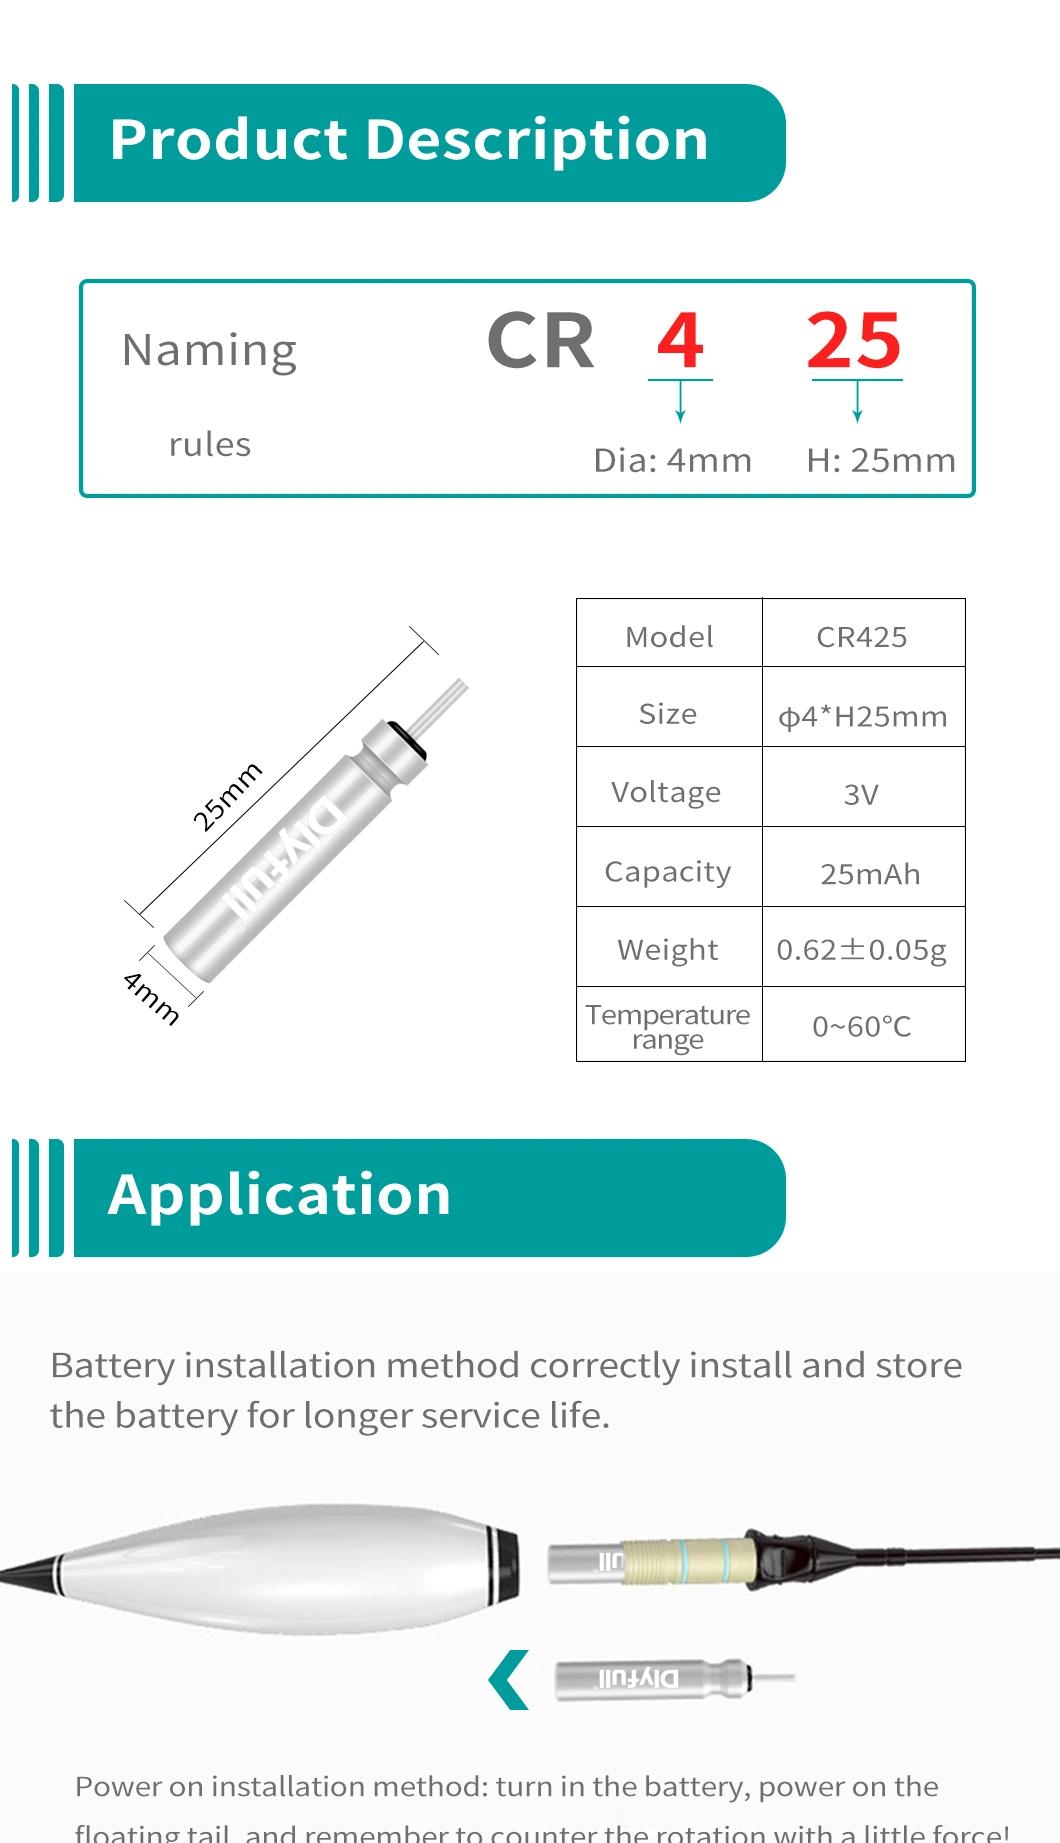 Dlyfull 3V Cr425 Pin Type Battery for Night Fishing LED Fishing Battery